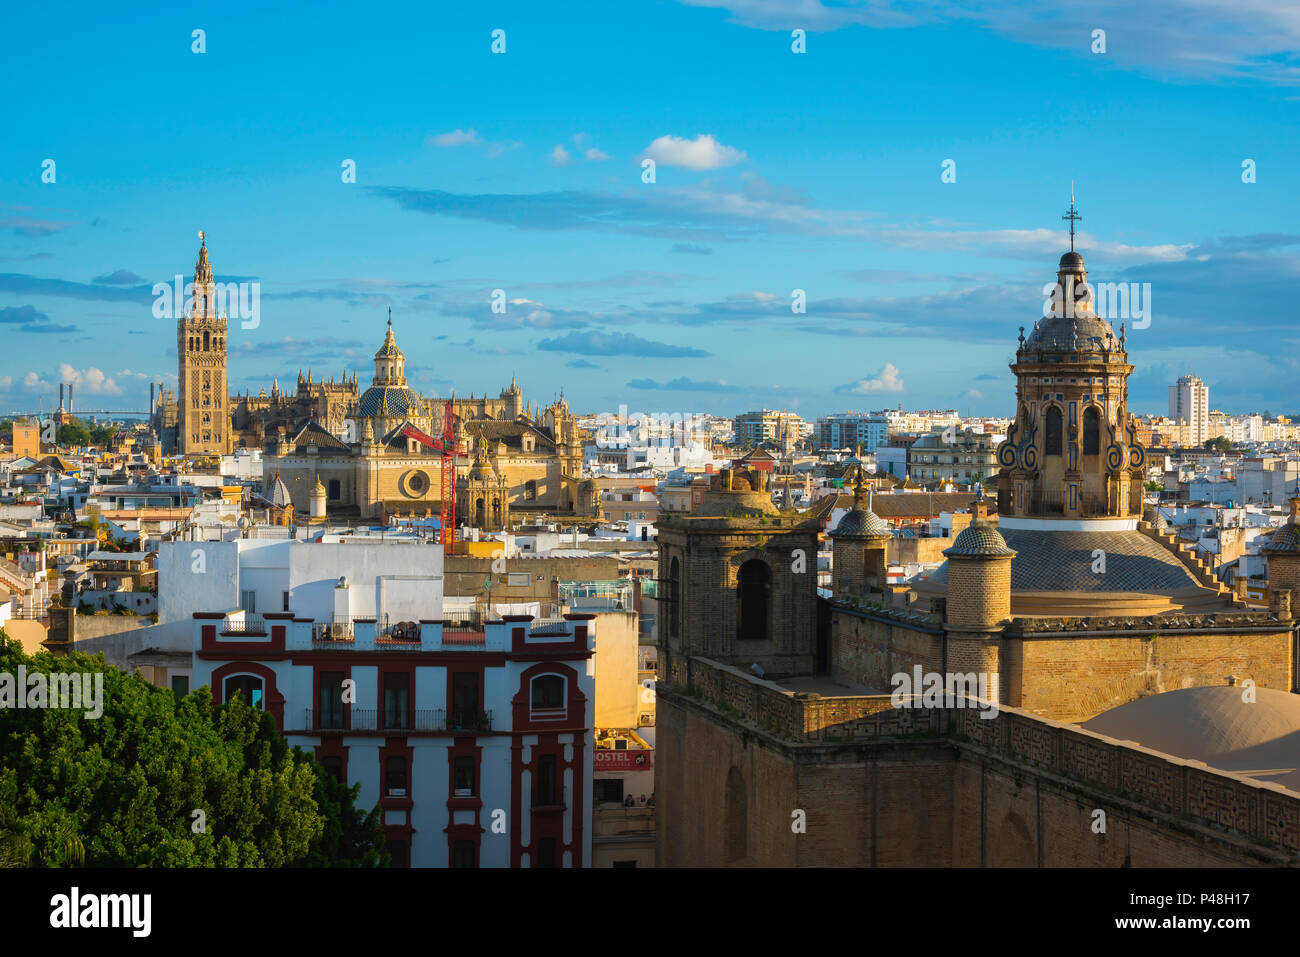 Lo skyline di Siviglia, vista su tutta la città vecchia di Siviglia al tramonto verso la cattedrale e la Giralda torre-campanile, Andalusia. Foto Stock